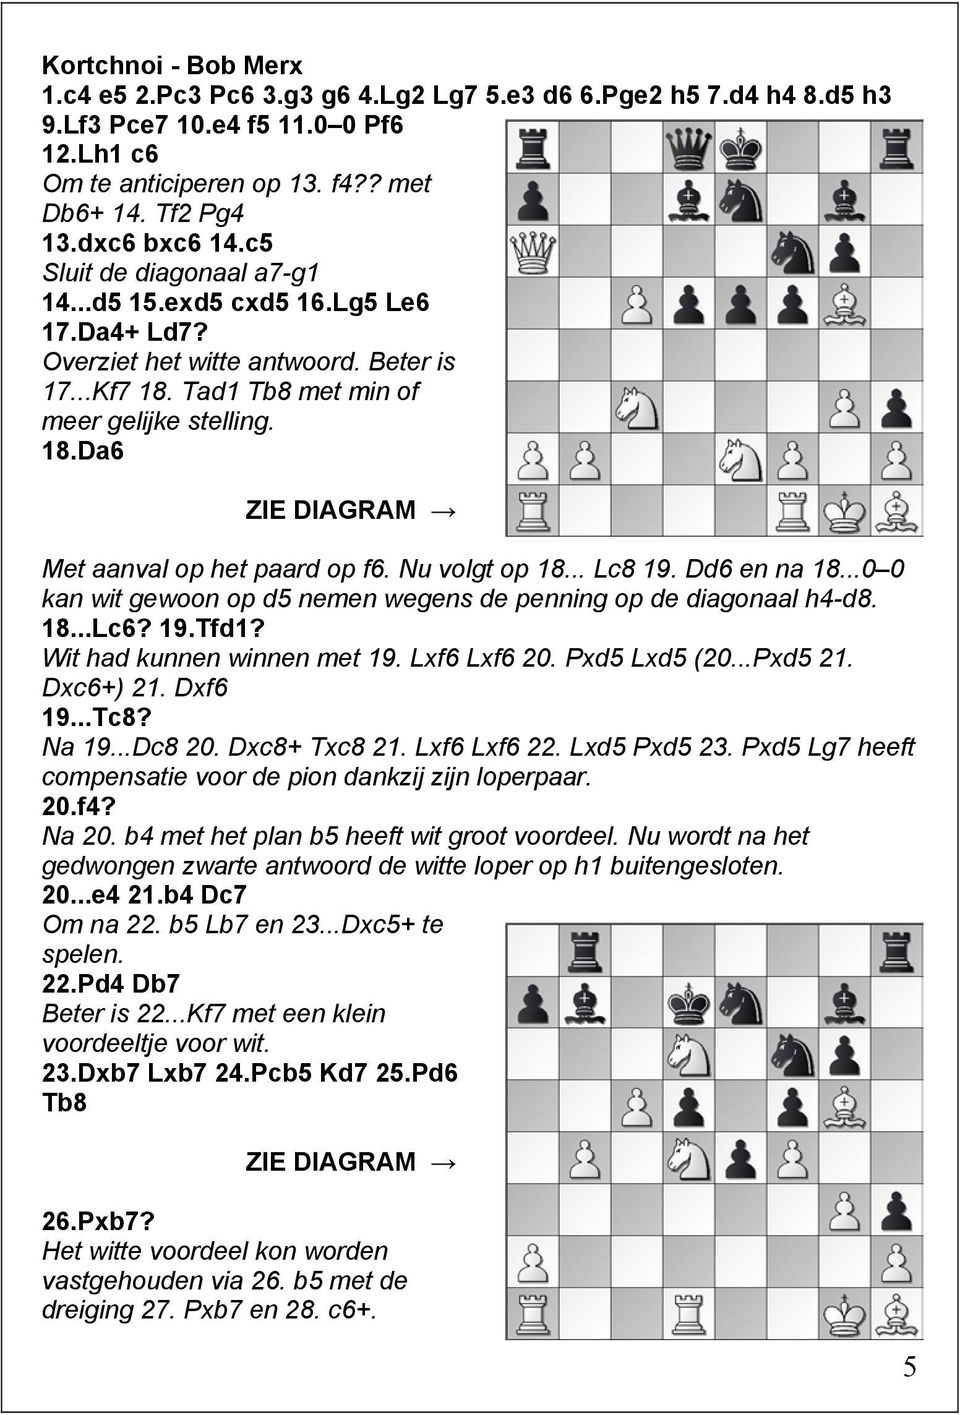 Nu volgt op 18... Lc8 19. Dd6 en na 18...0 0 kan wit gewoon op d5 nemen wegens de penning op de diagonaal h4-d8. 18...Lc6? 19.Tfd1? Wit had kunnen winnen met 19. Lxf6 Lxf6 20. Pxd5 Lxd5 (20...Pxd5 21.